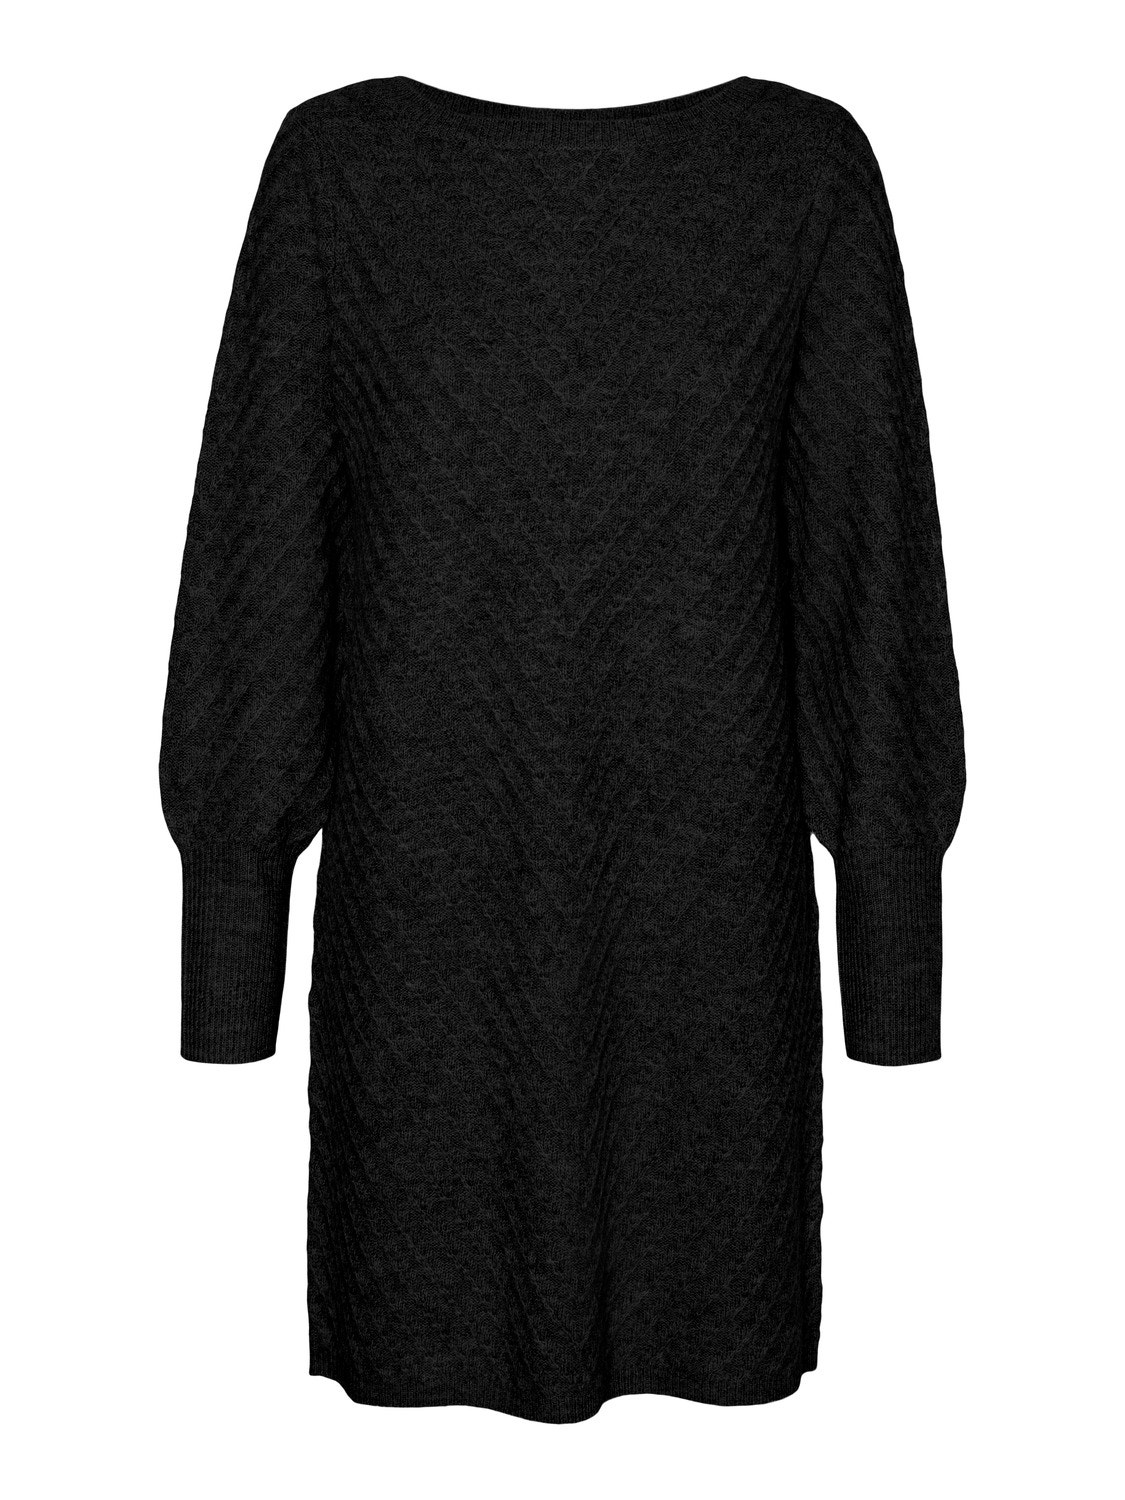 Vero Moda VMANJASTINNA Midi dress -Black - 10303570